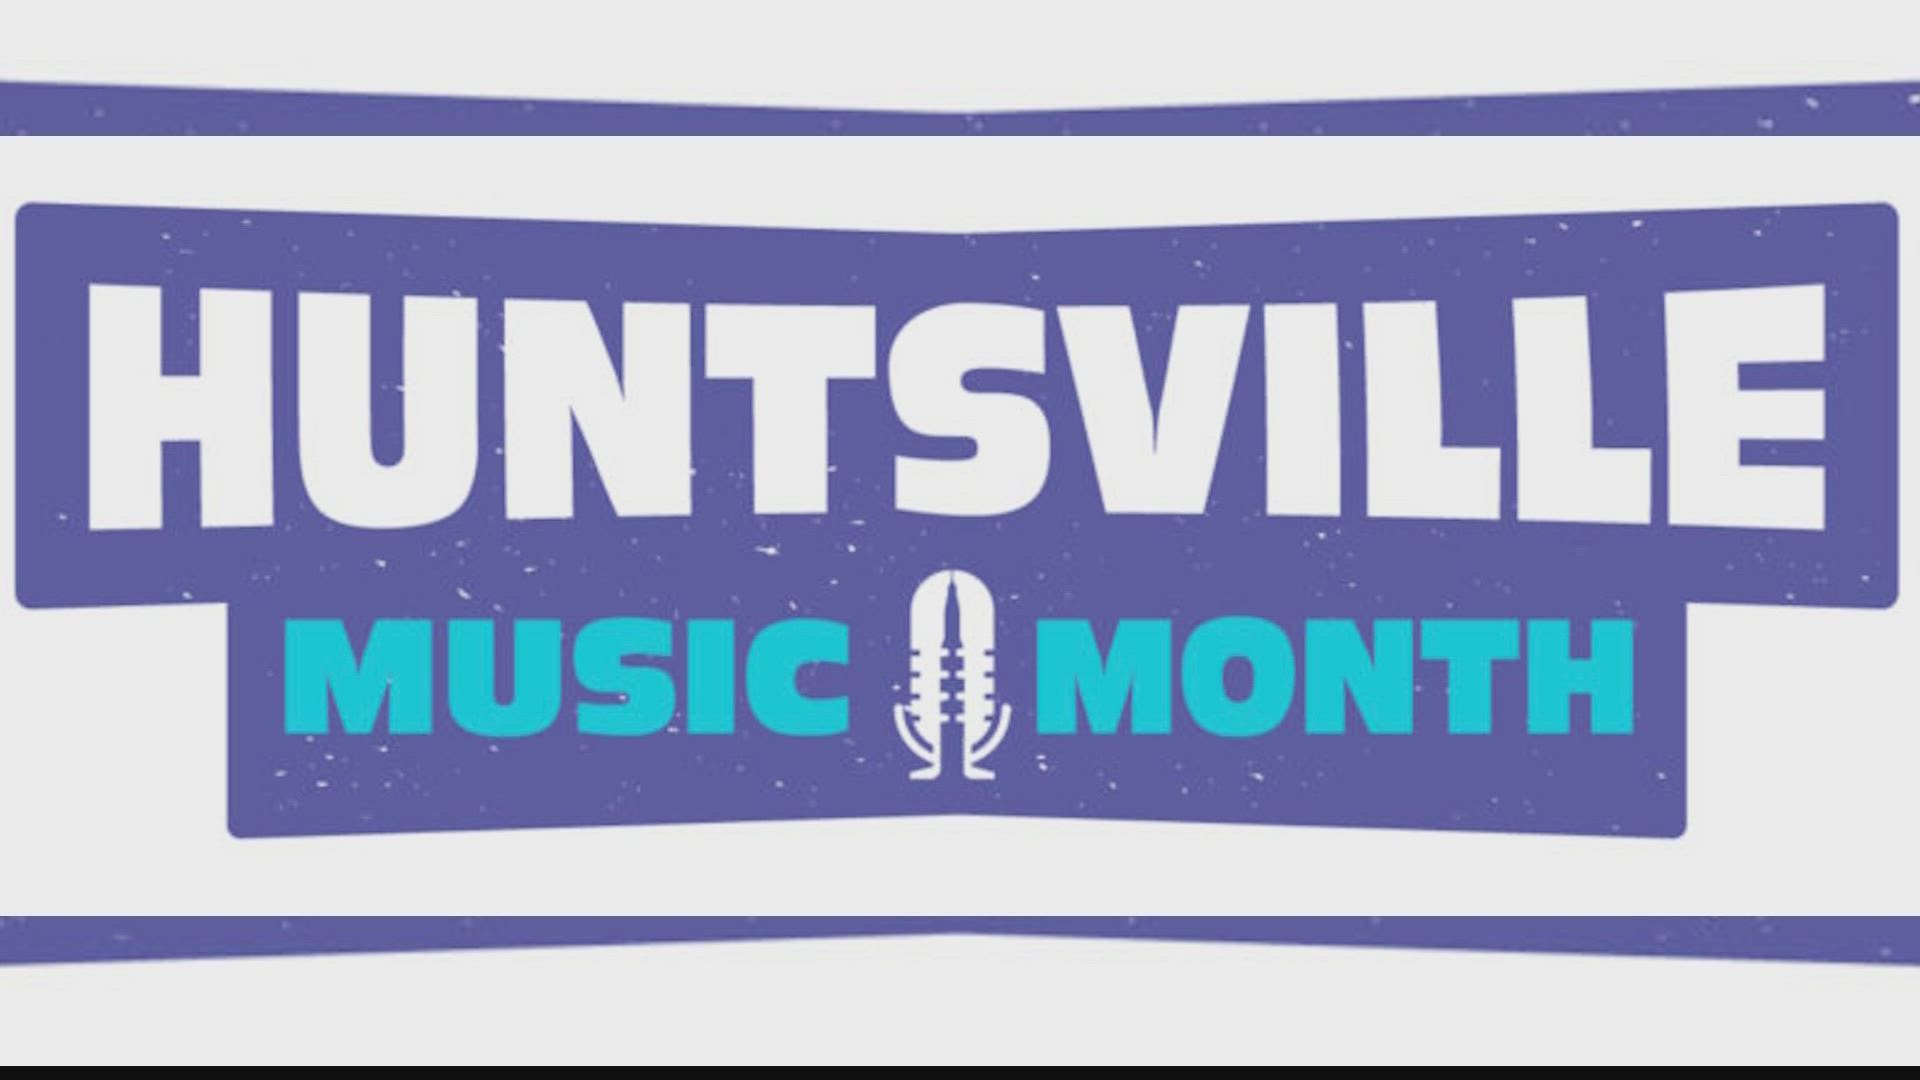 Huntsville Music Office needs instruments to further arts programs in Huntsville city schools.